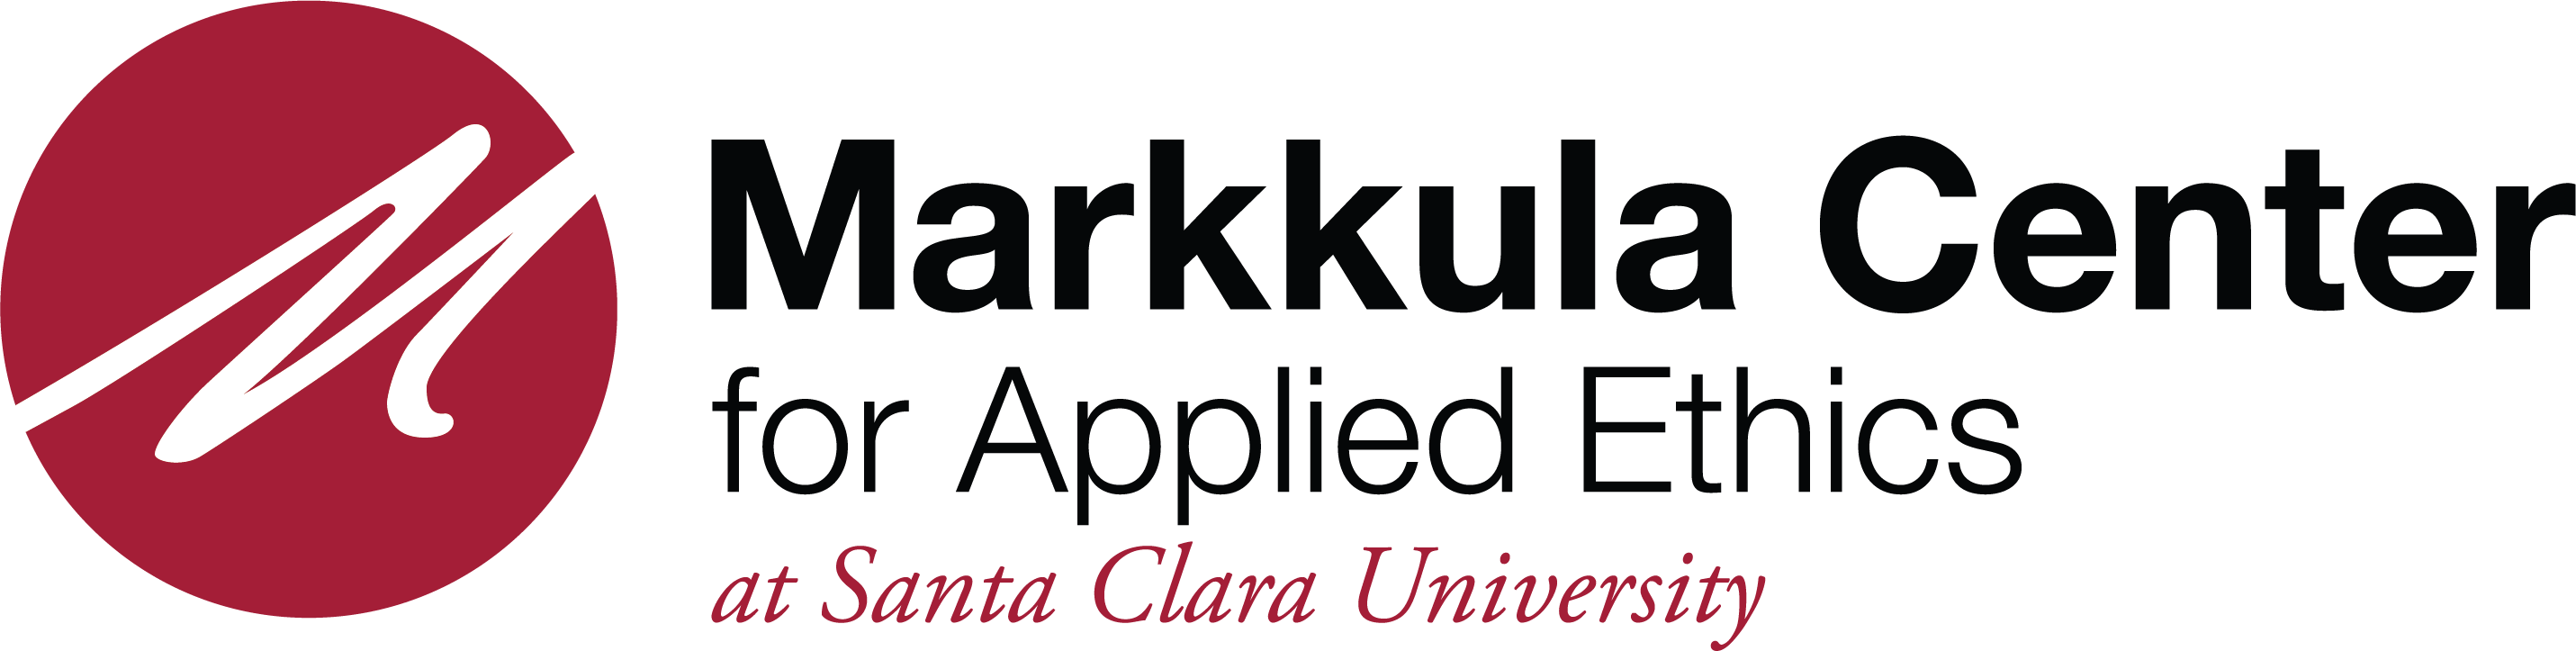 Markkula Center for Applied Ethics